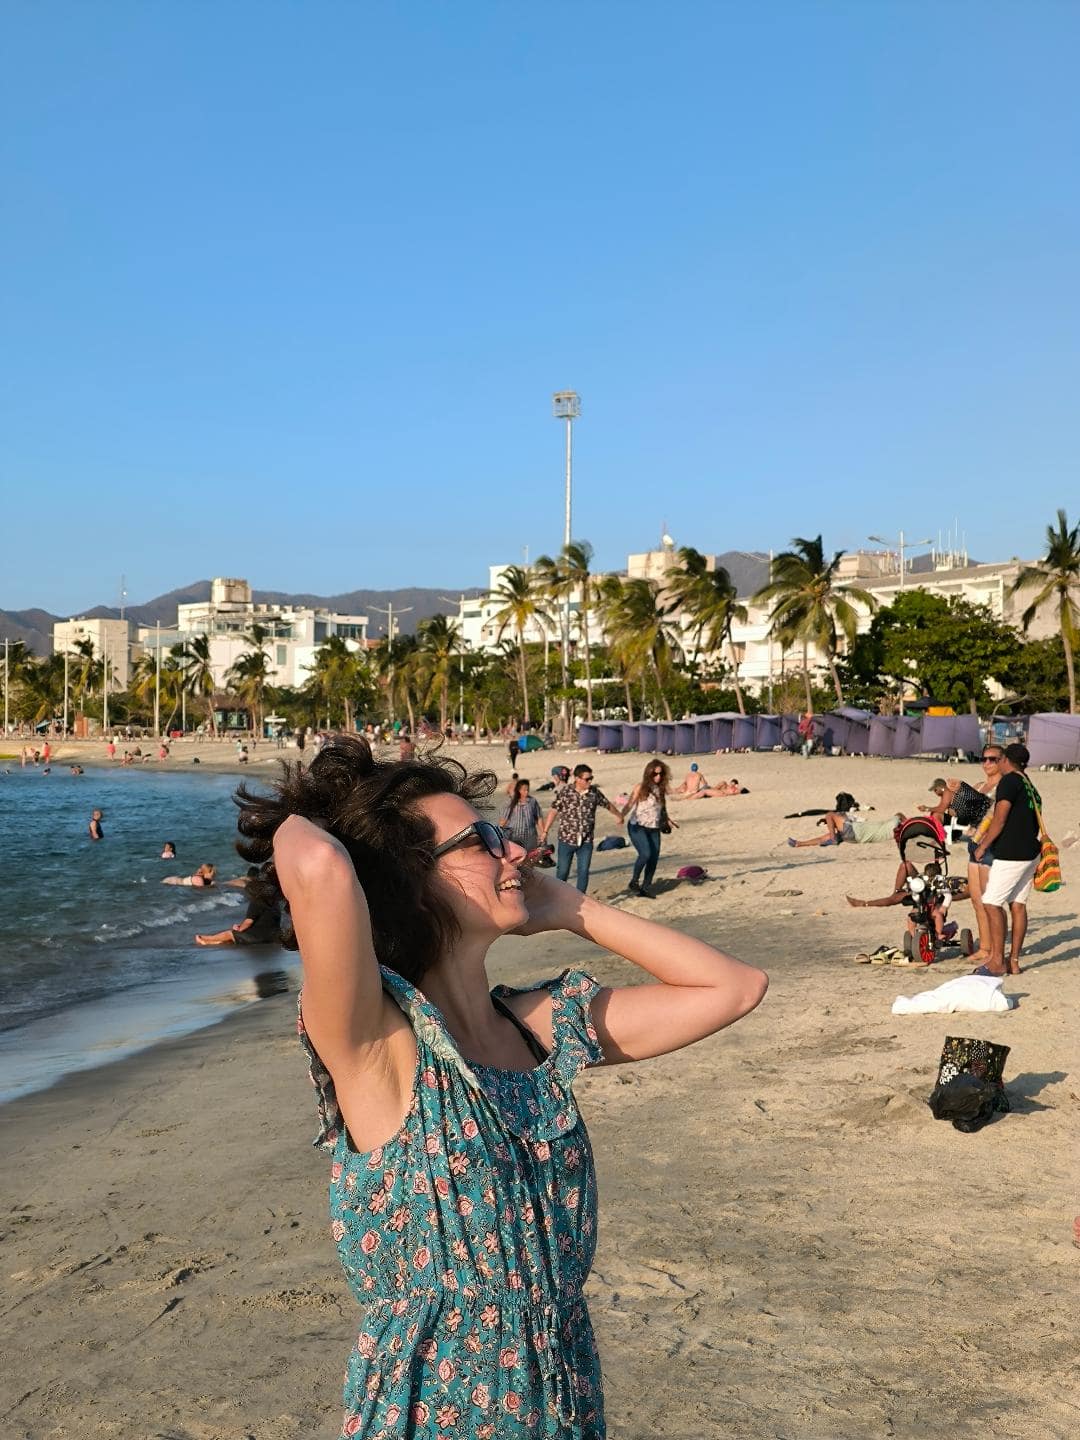 Dievča na pláži sa hrá s vlasmi. Za ňou sú turisti na pláži a vysoké palmy. Fúka silný vietor.